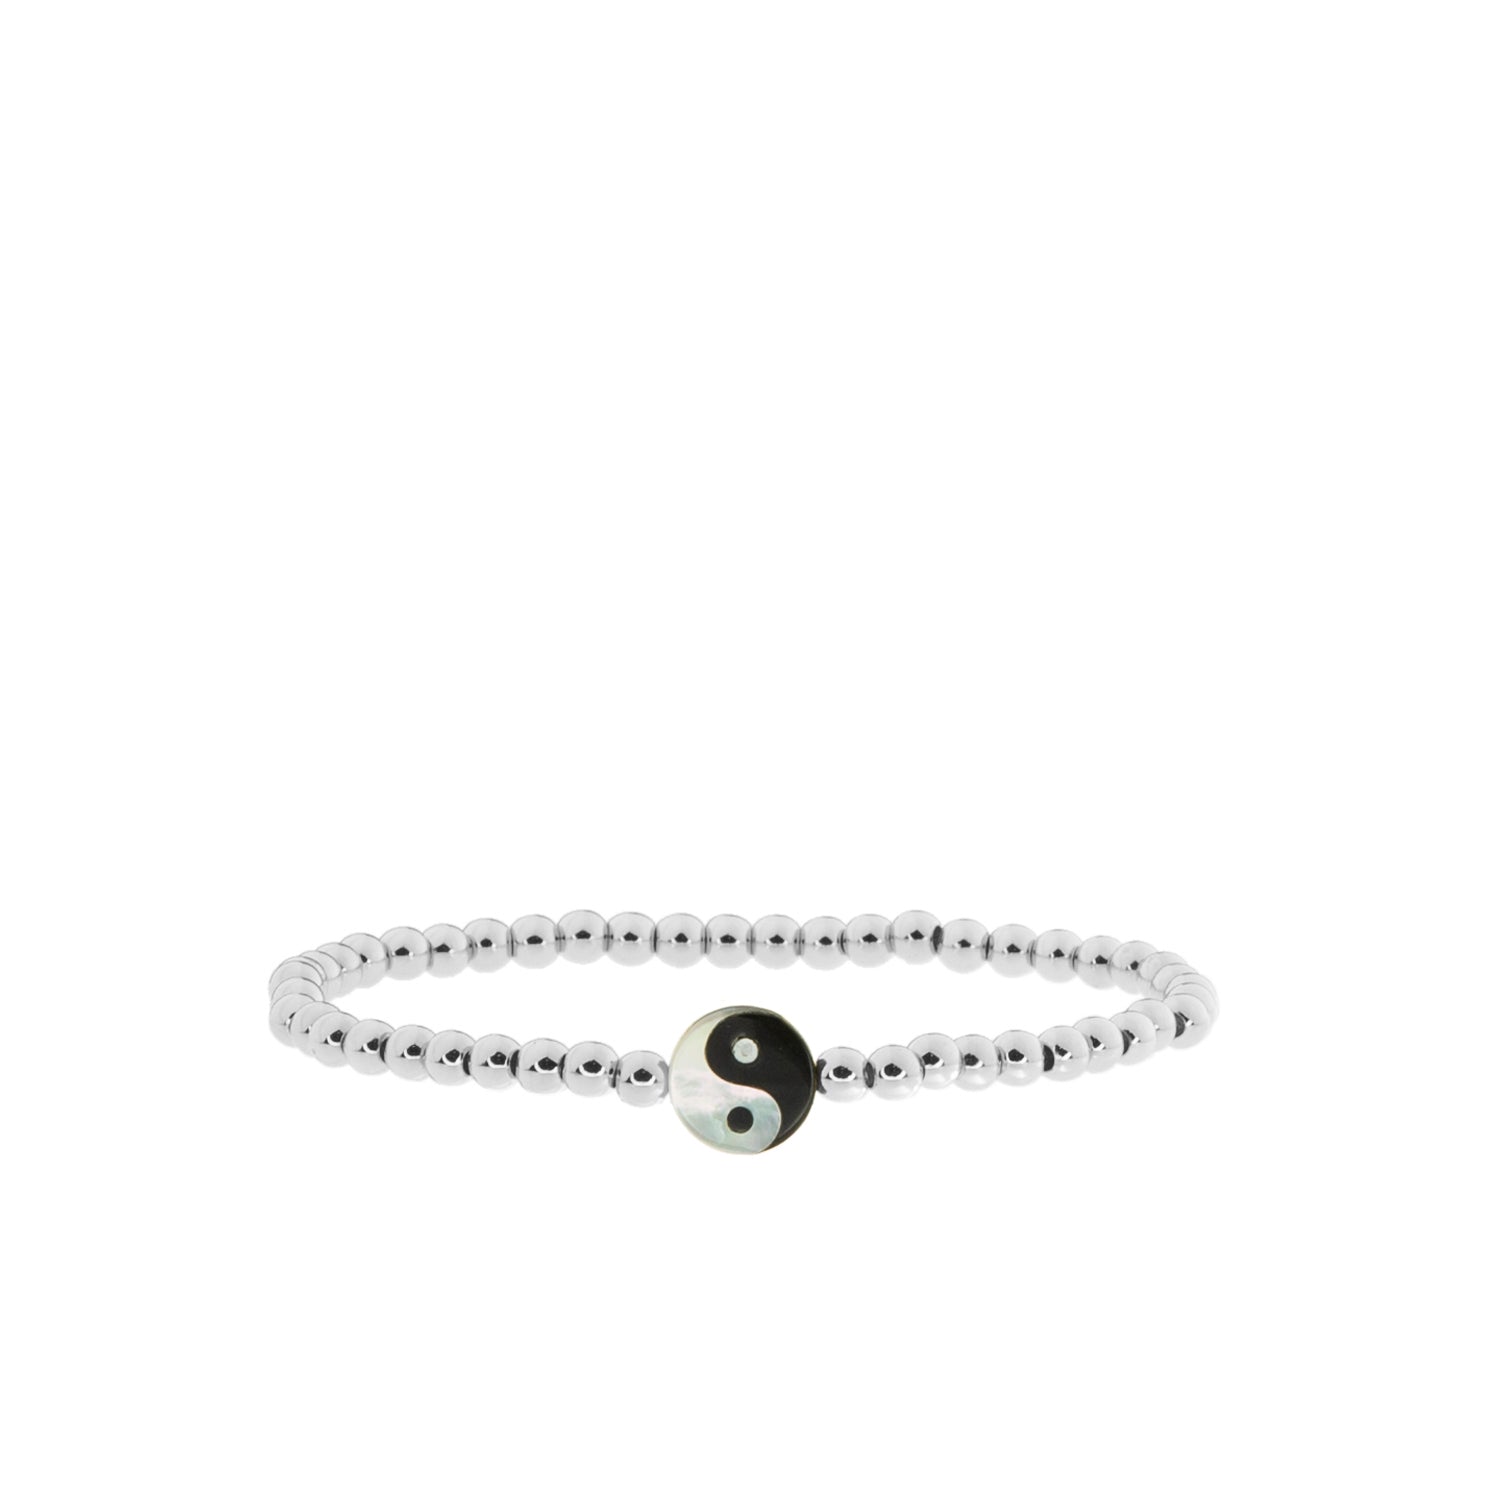 yin yang stretch bracelet